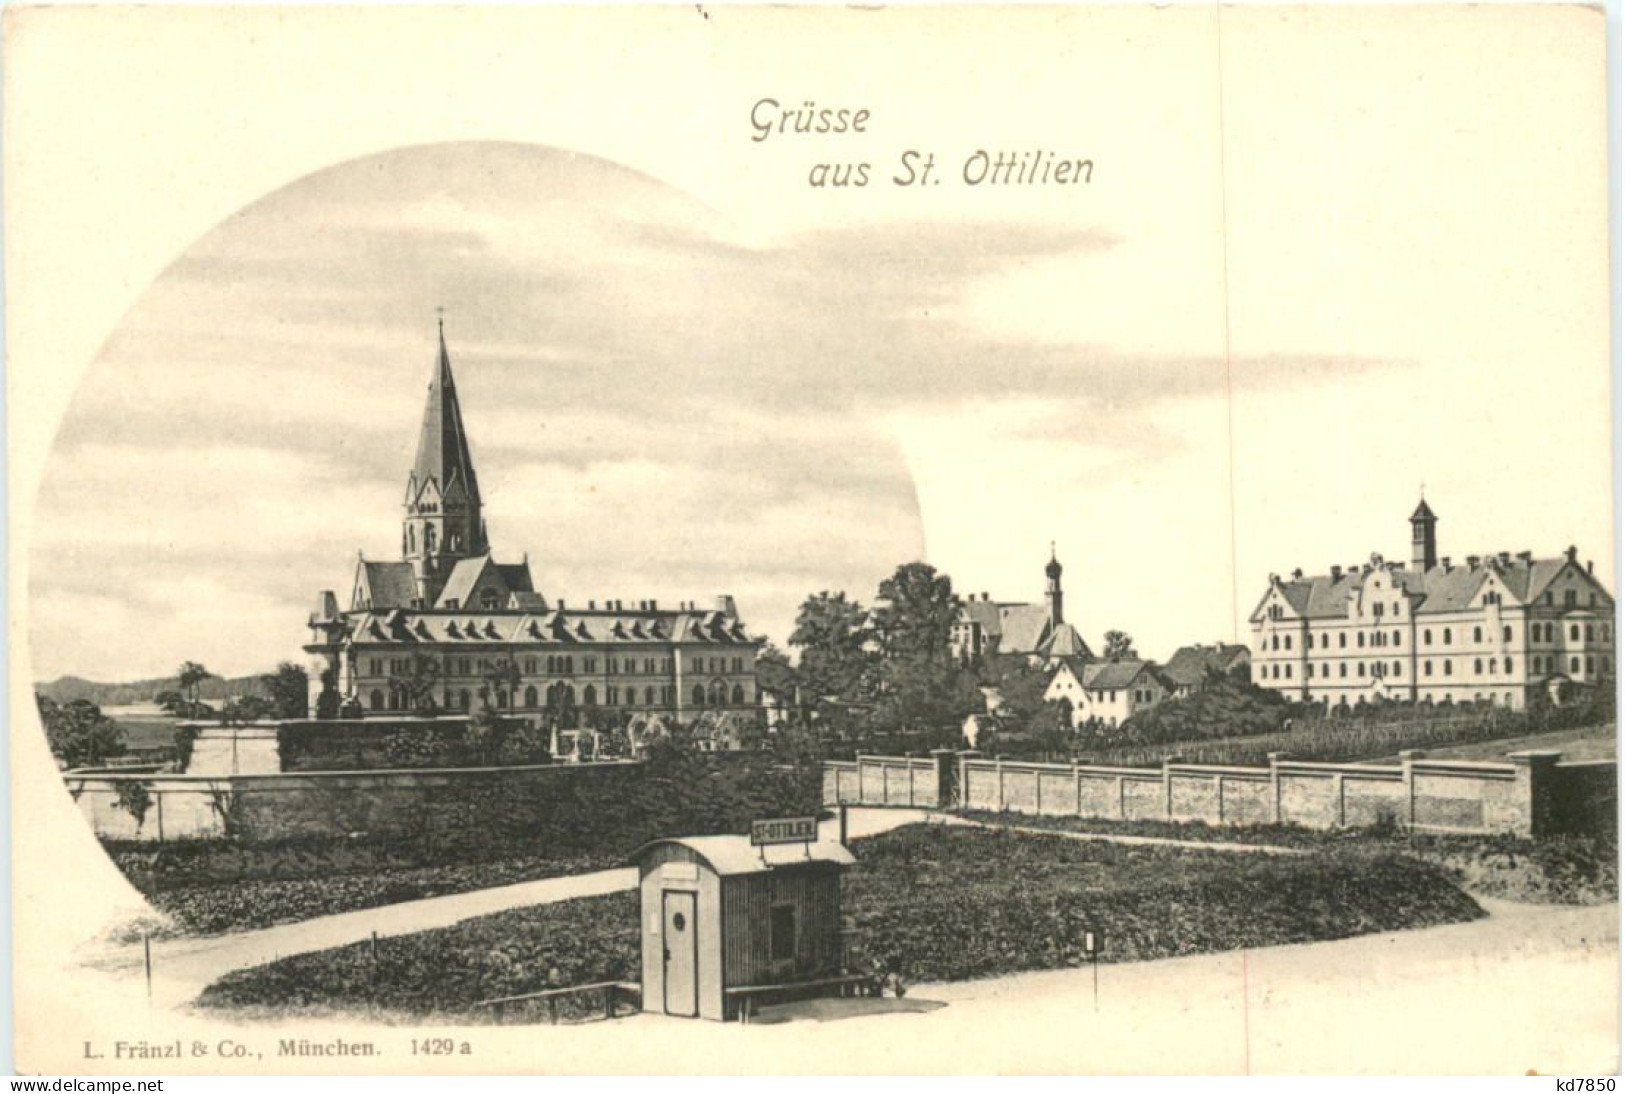 St. Ottilien, Grüsse - Landsberg